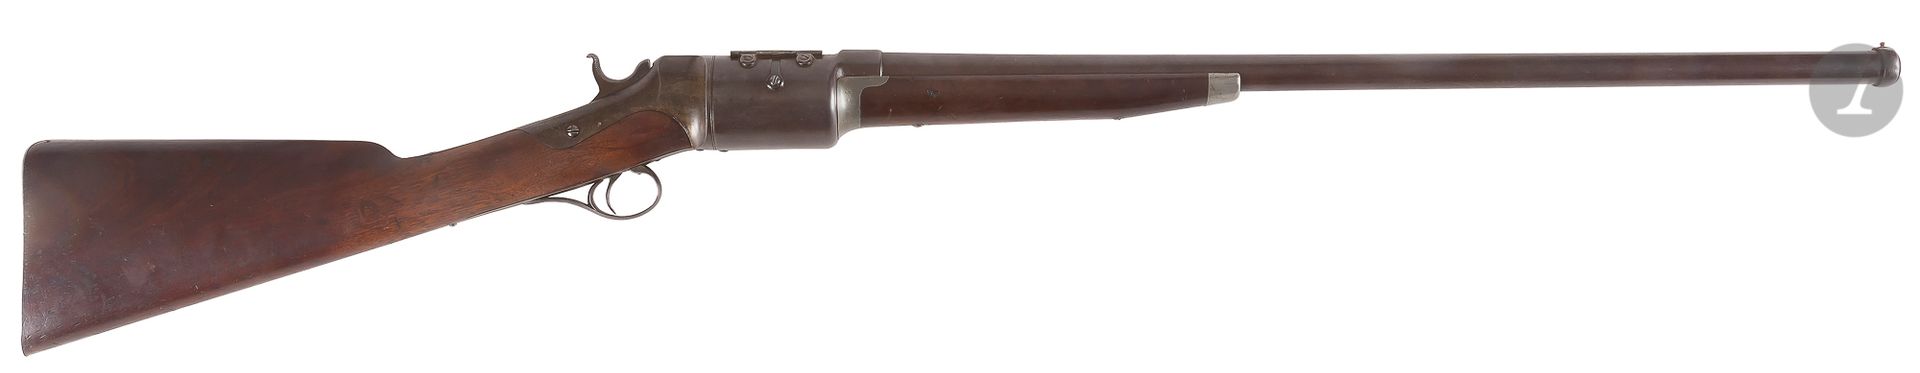 Null Fusil del sistema "Roper" modelo 1866 "Shotgun" con cargador giratorio, cua&hellip;